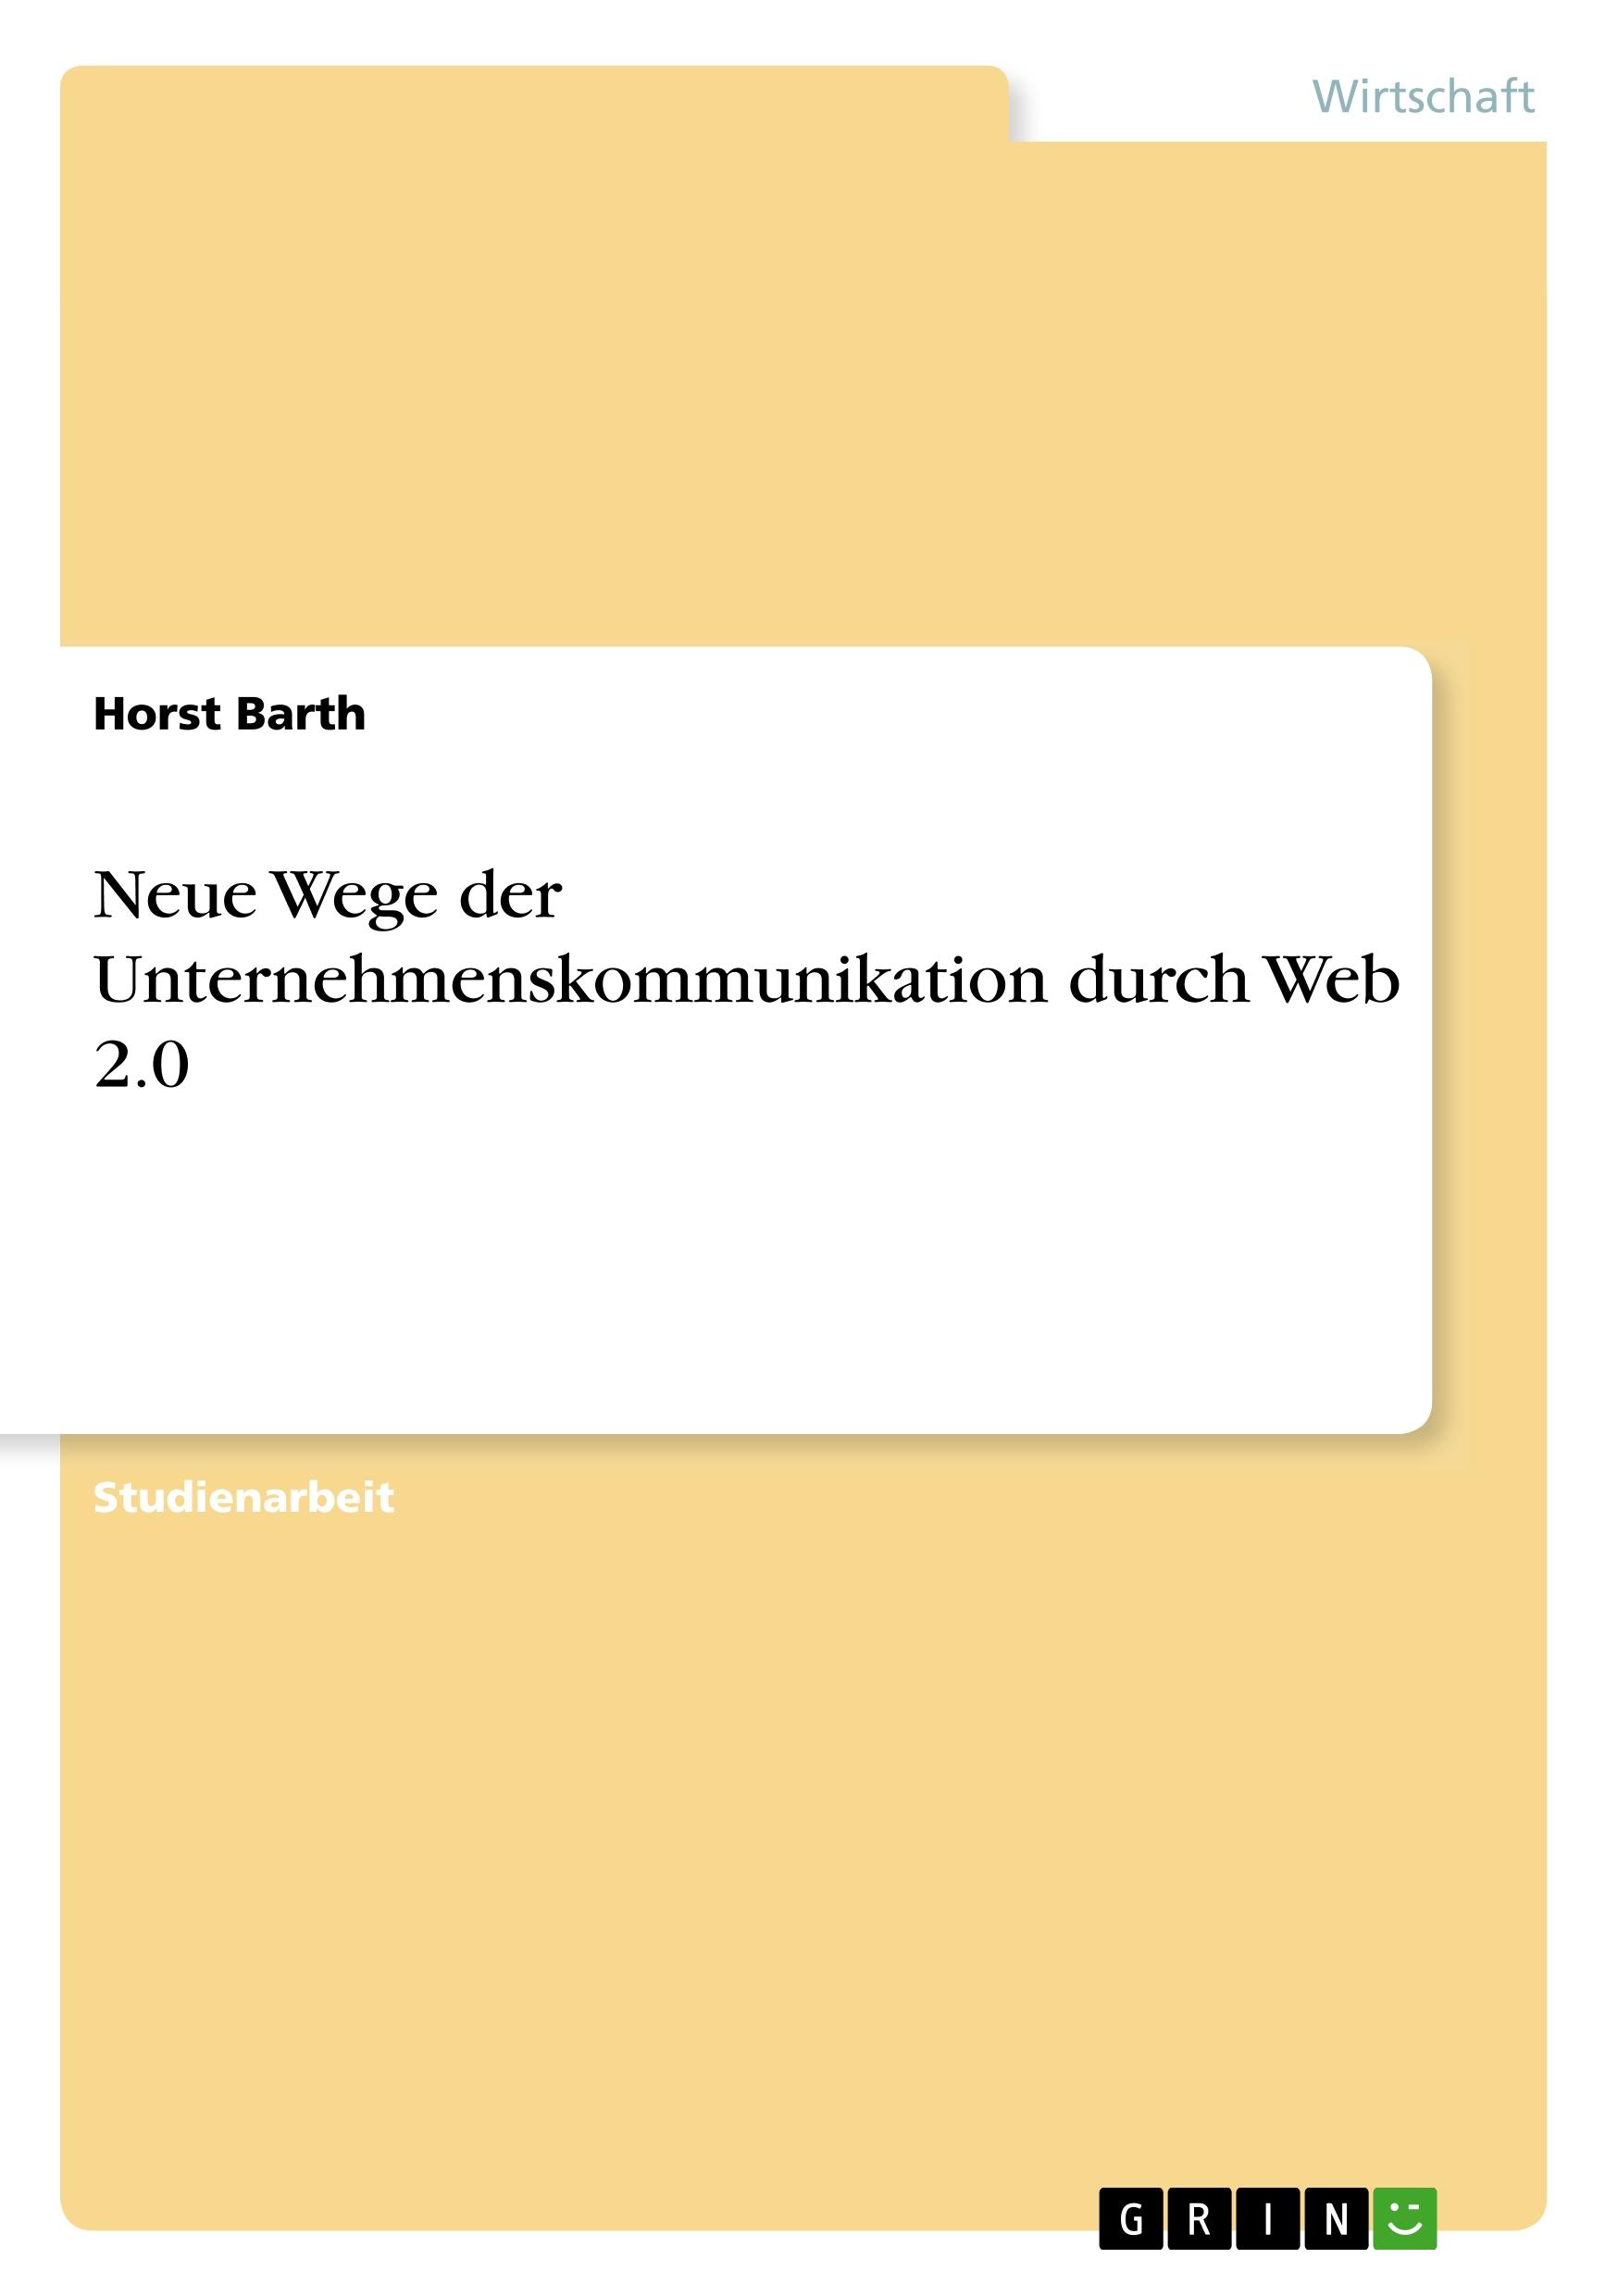 Neue Wege der Unternehmenskommunikation durch Web 2.0 - Barth, Horst